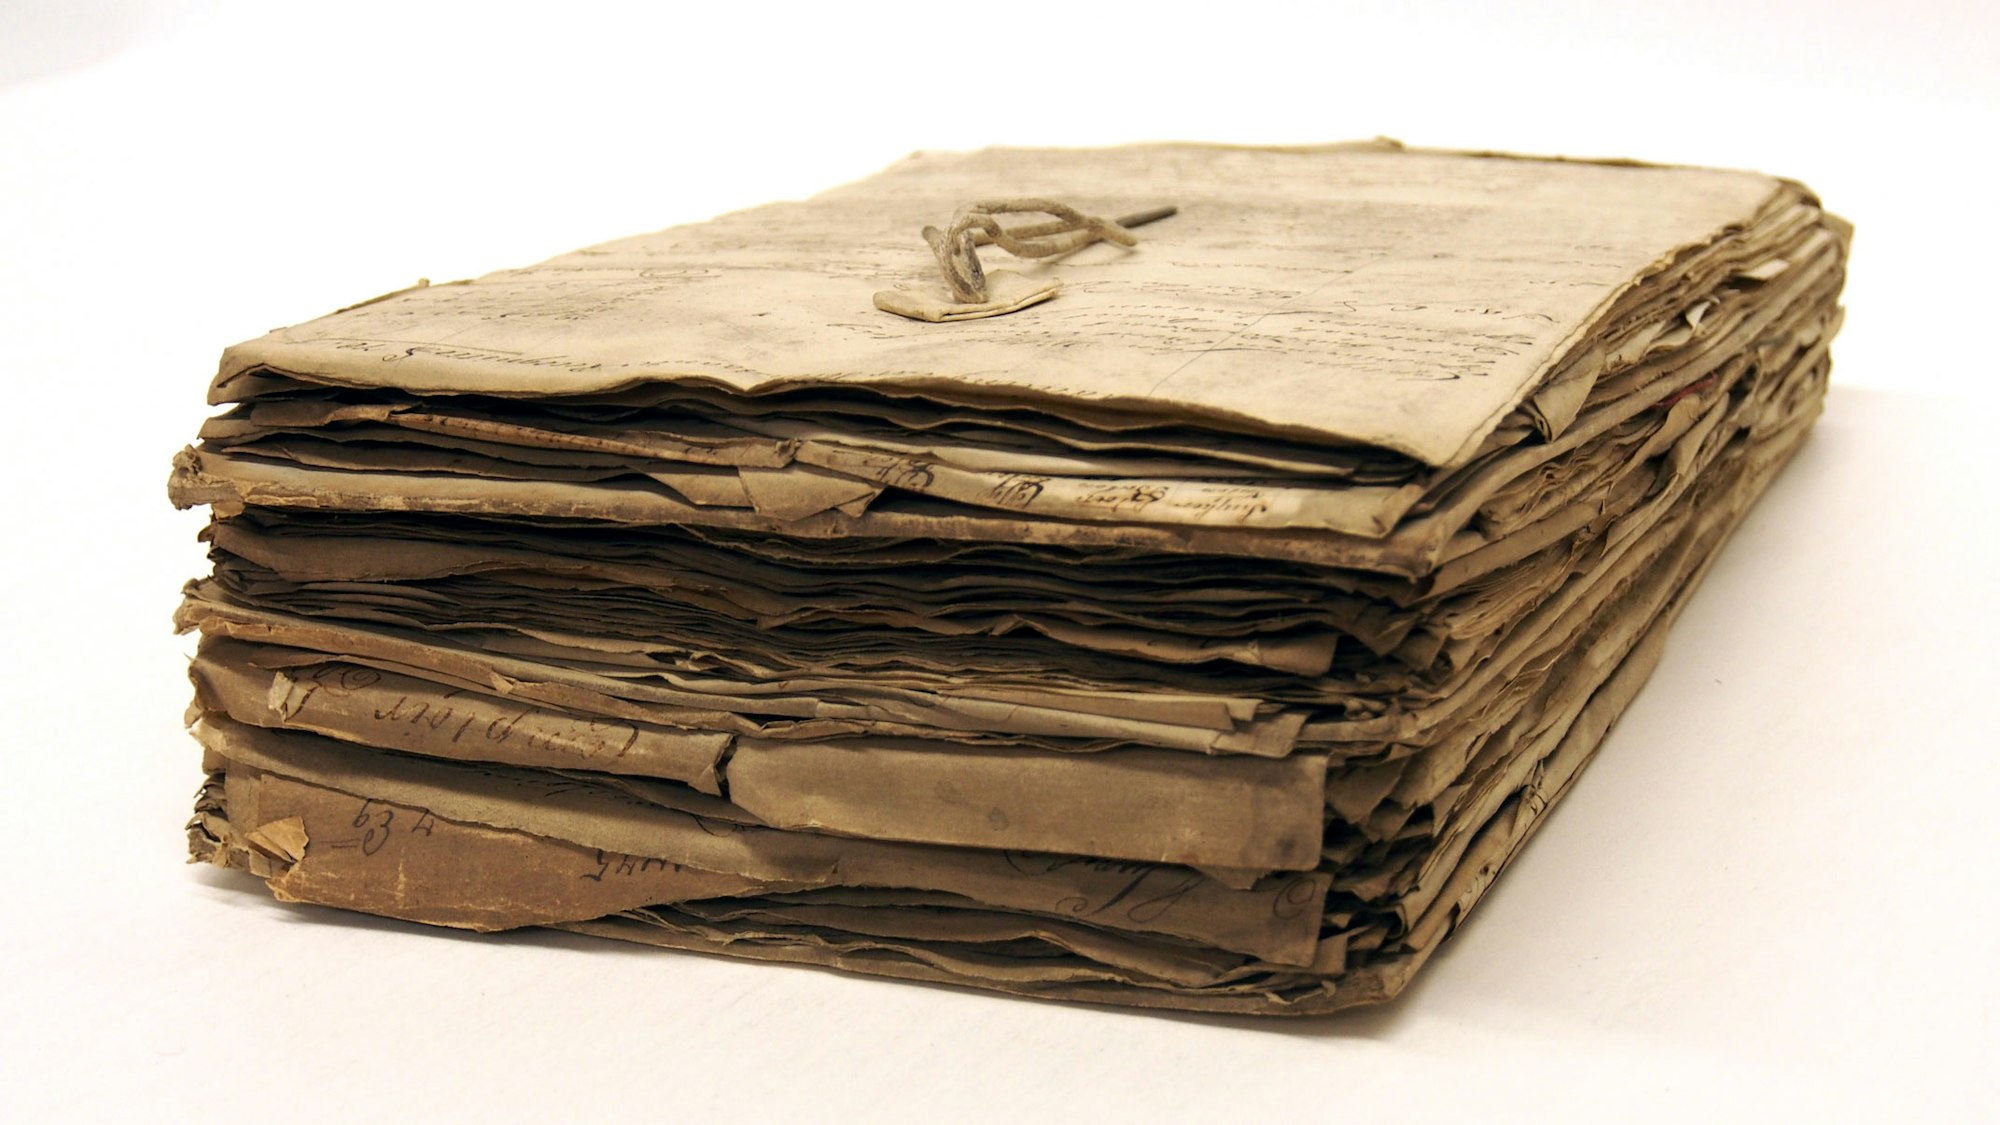 Papieren bijeengehouden door een touw of lias, die dwars door de pagina's heen is gestoken.